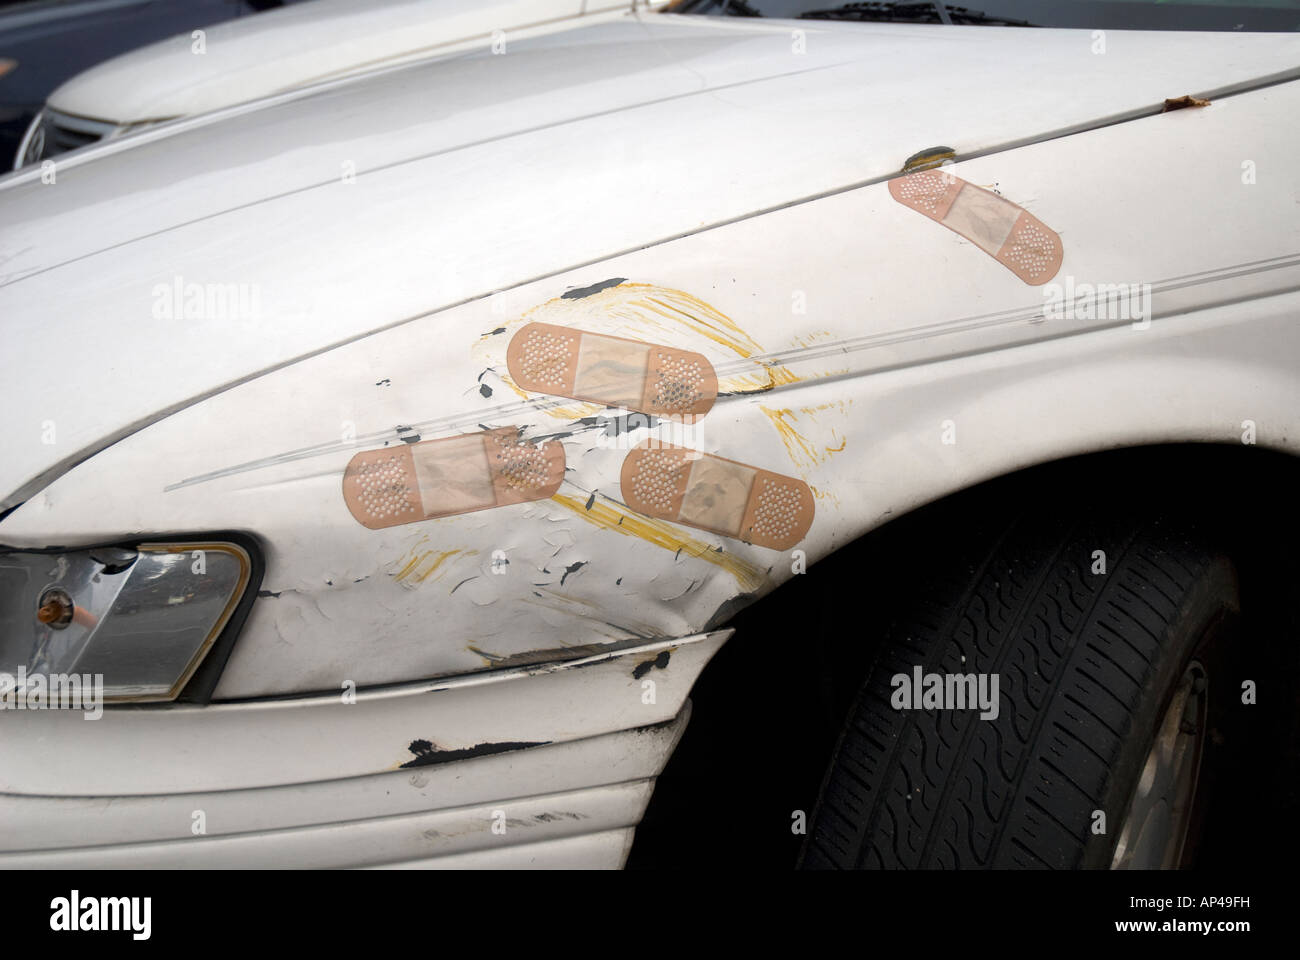 Auto mit riesigen Pflaster für Unfallschäden Stockfotografie - Alamy